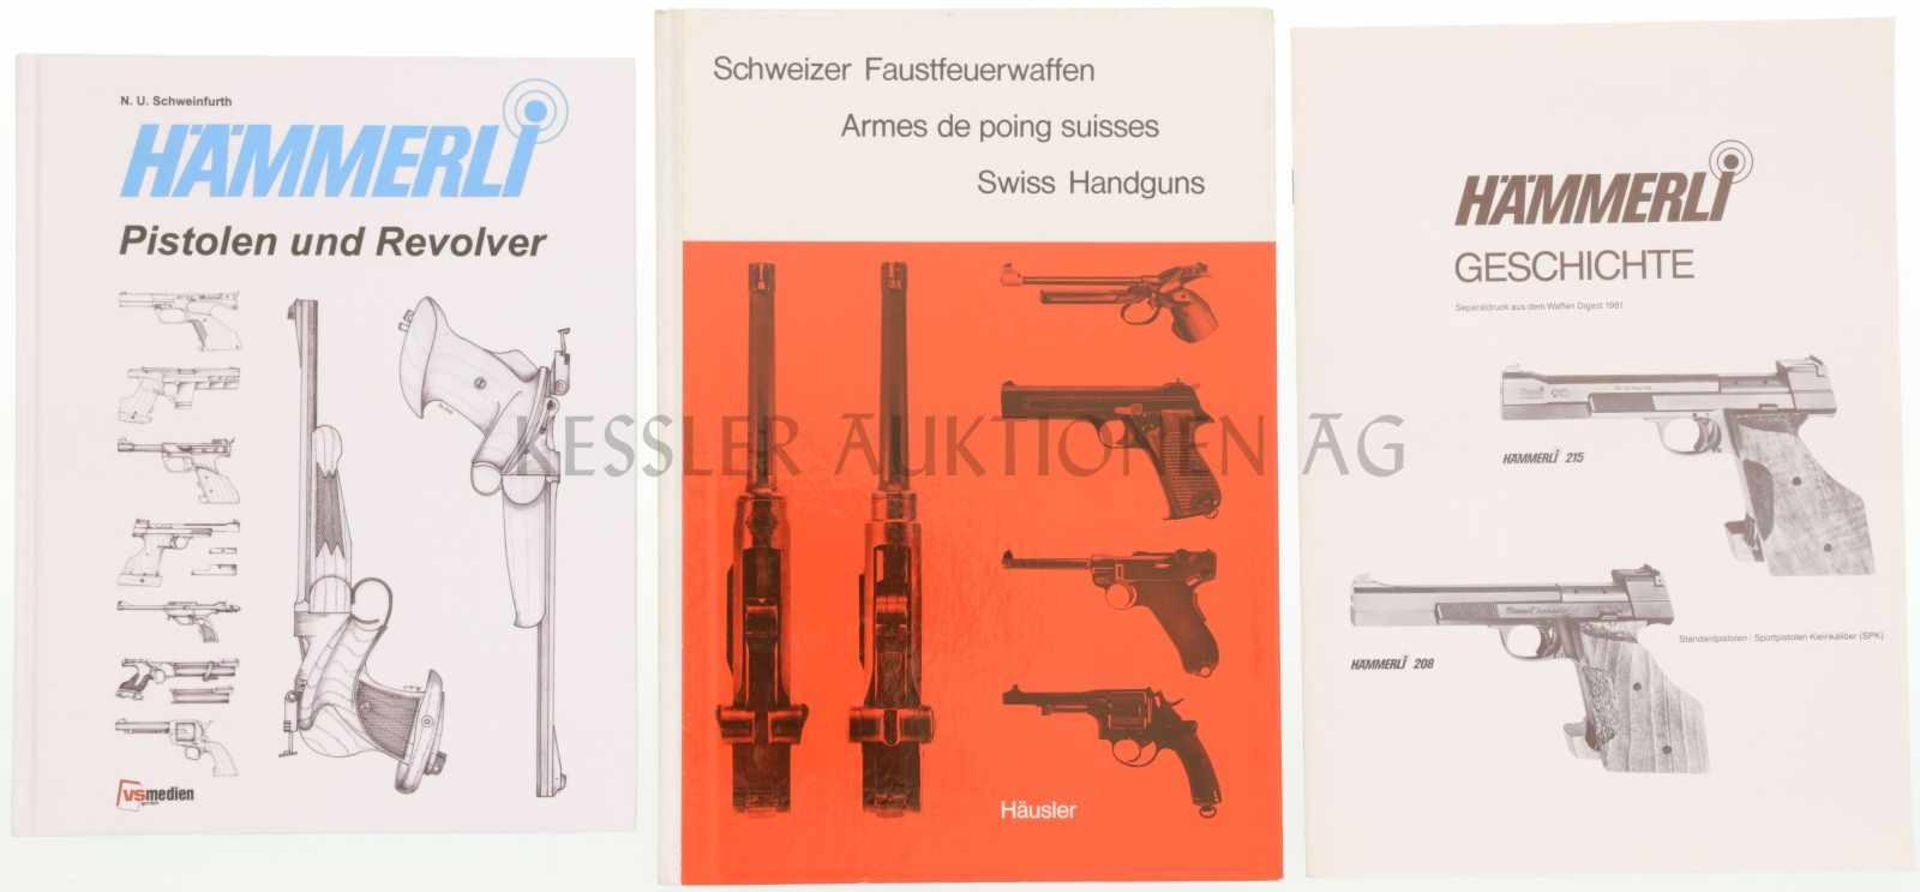 Konvolut 2 Bücher und 1 Heft 1. Hämmerli Pistolen und Revolver, Autor N.U. Schweinfurth, Verlag VS